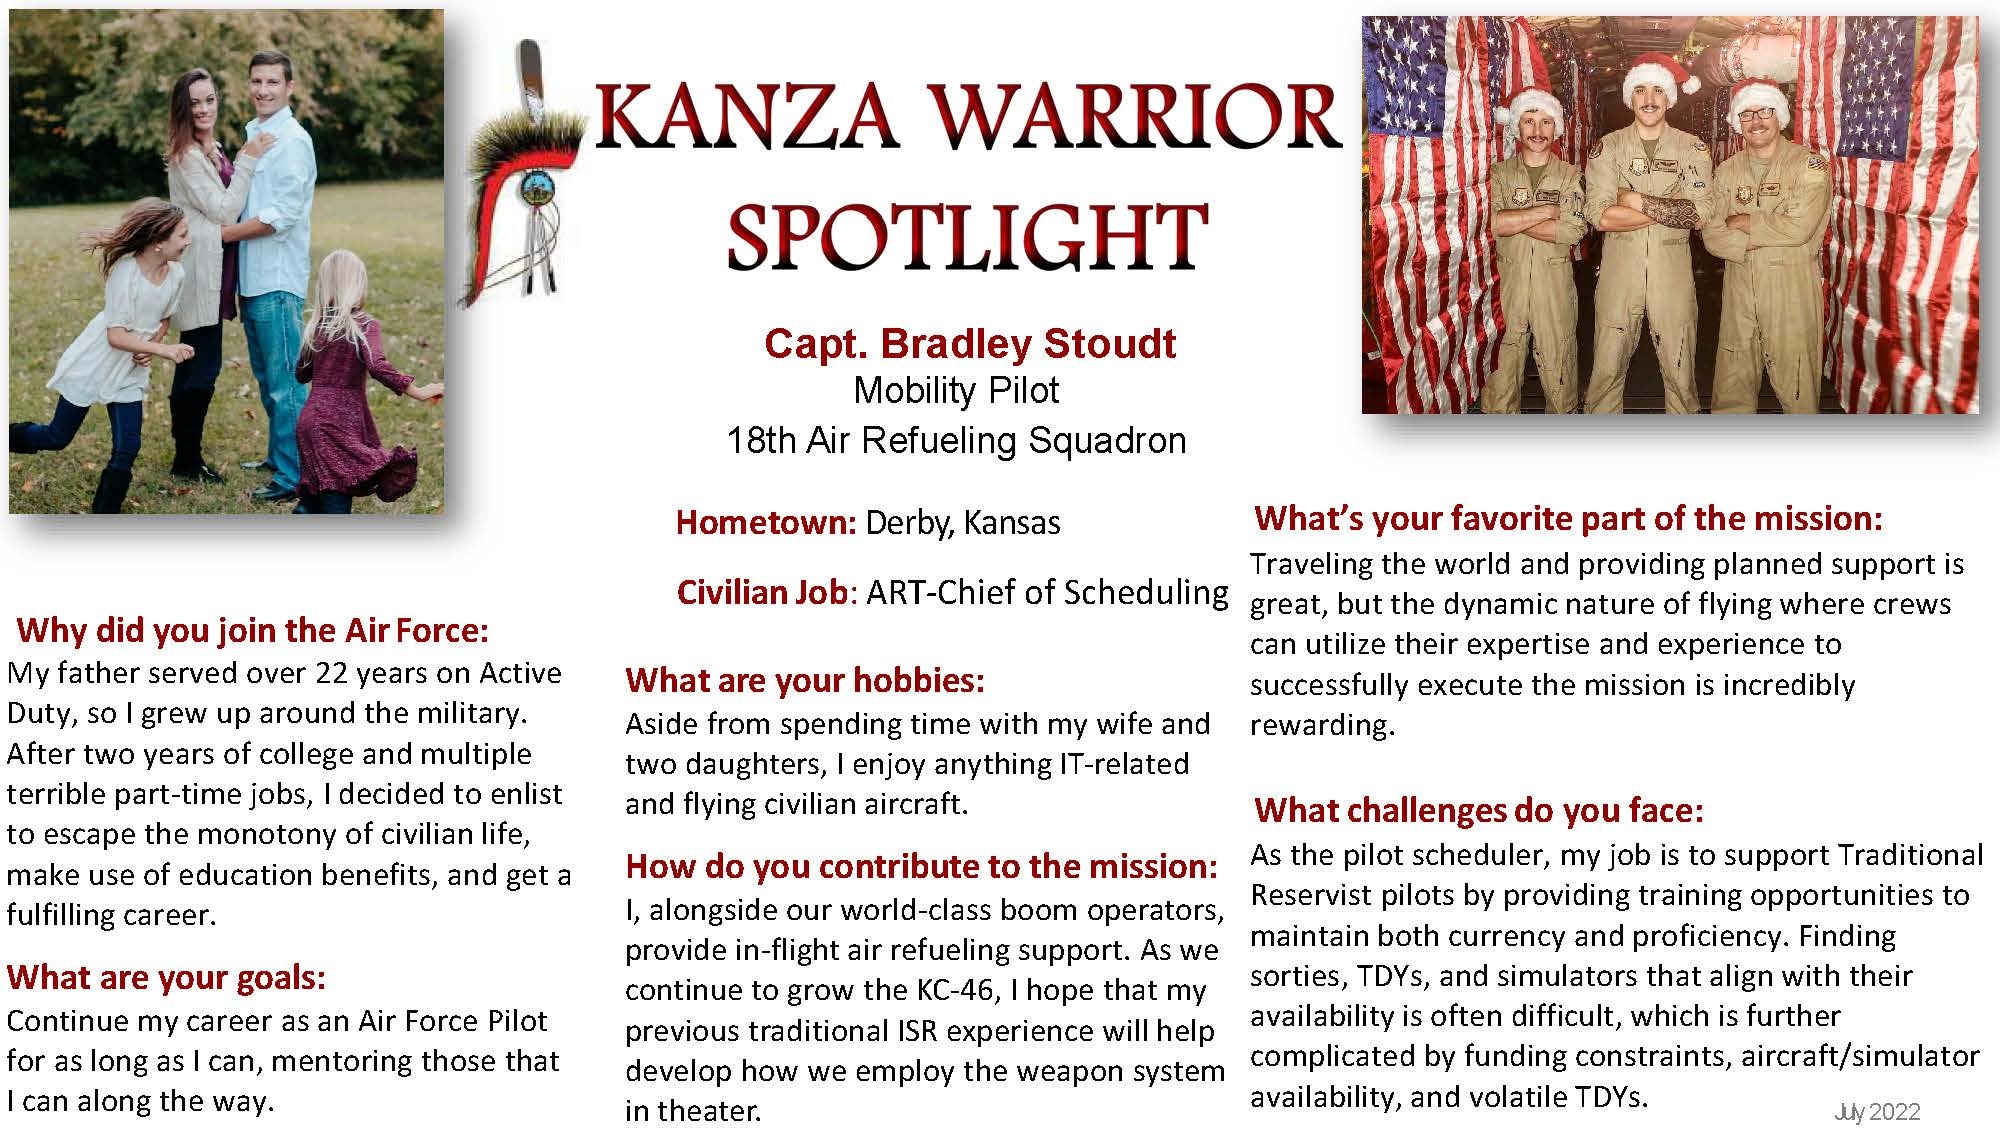 KANZA Warrior Spotlight July 2022